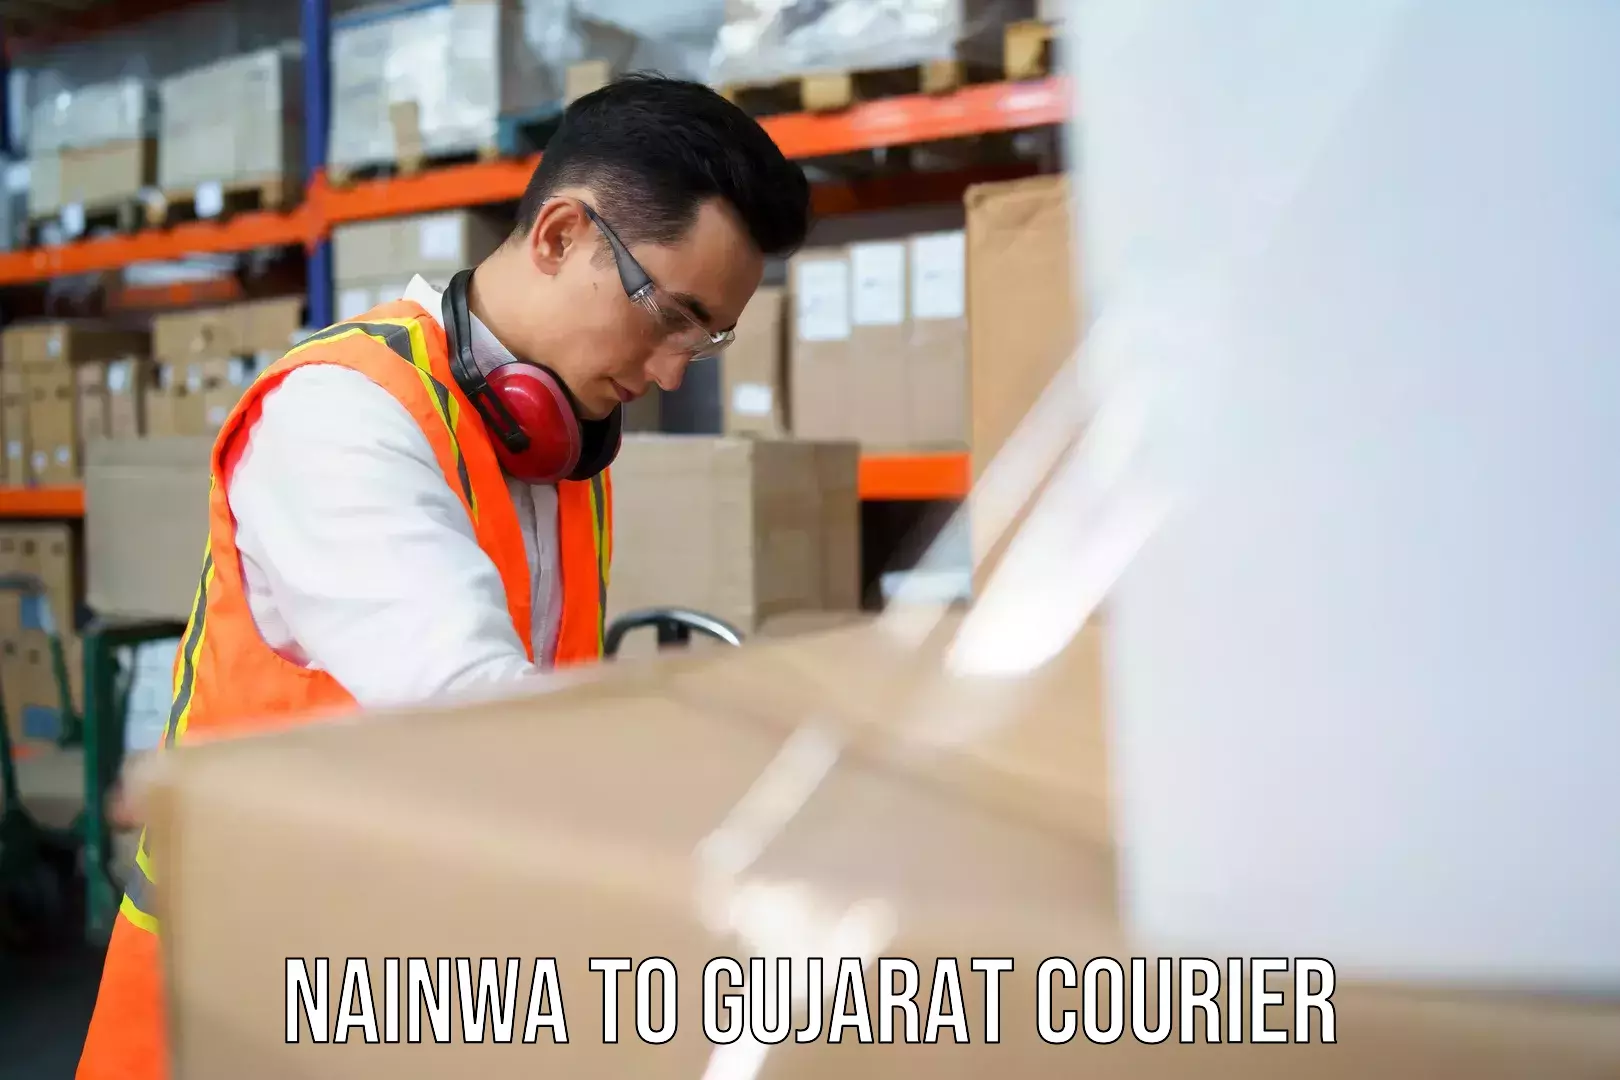 Local courier options Nainwa to Gujarat